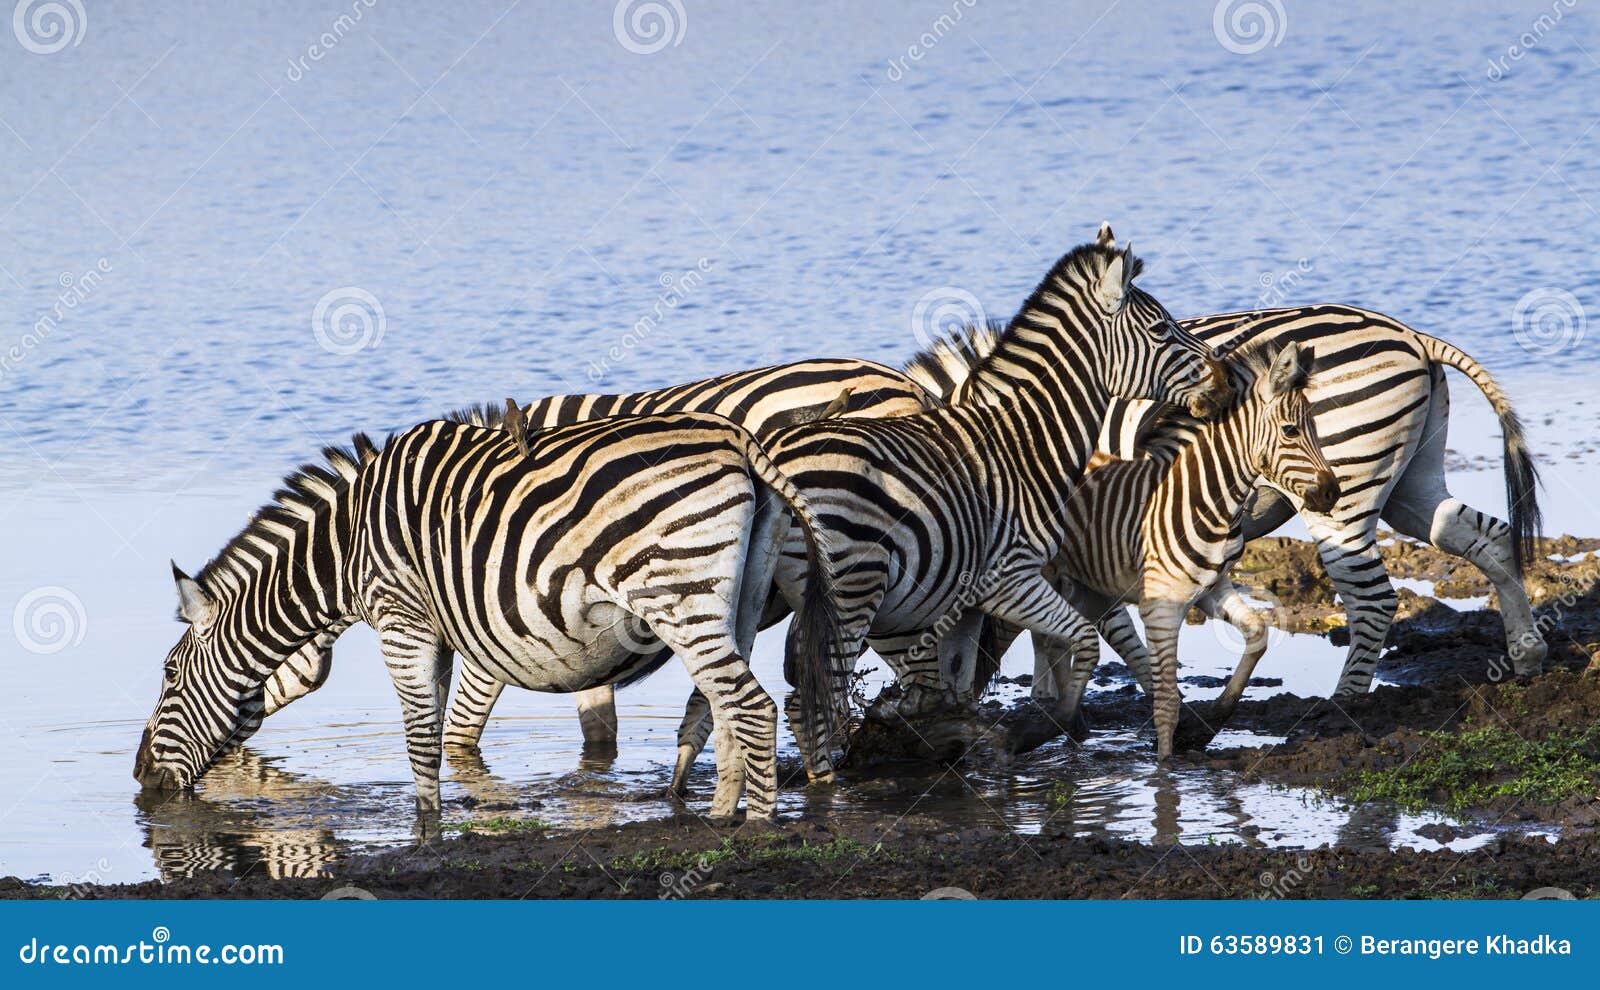 burchellÃ¢â¬â¢s zebra in the riverbank in kruger national park